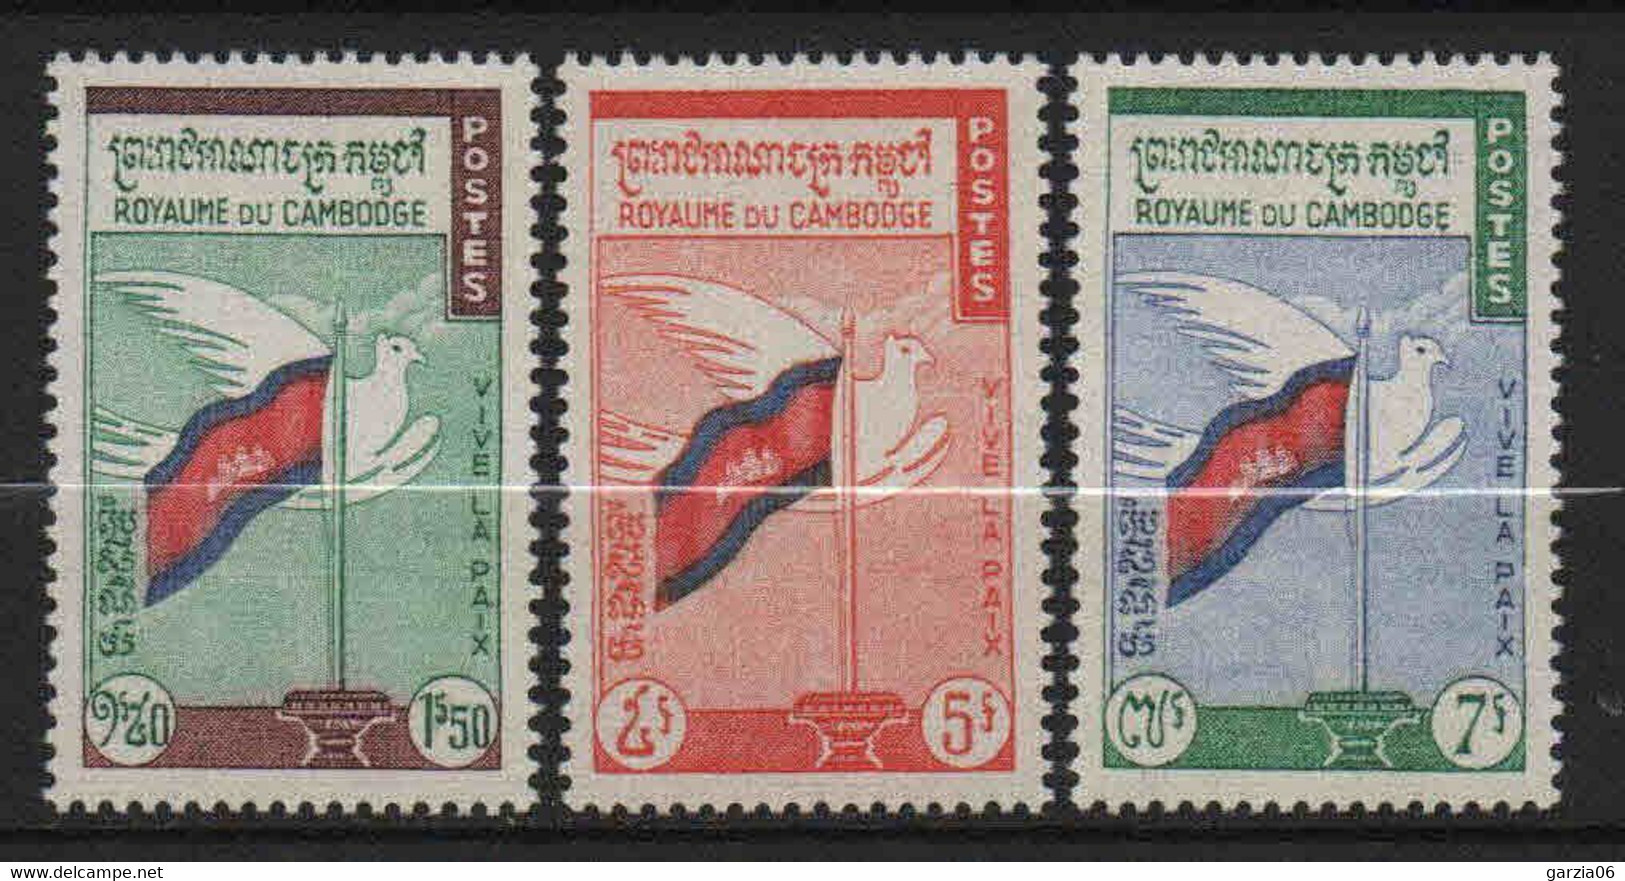 Cambodge - 1961  - Drapeau  - N° 98 à 100  -  Neufs ** -  MNH - Cambodge